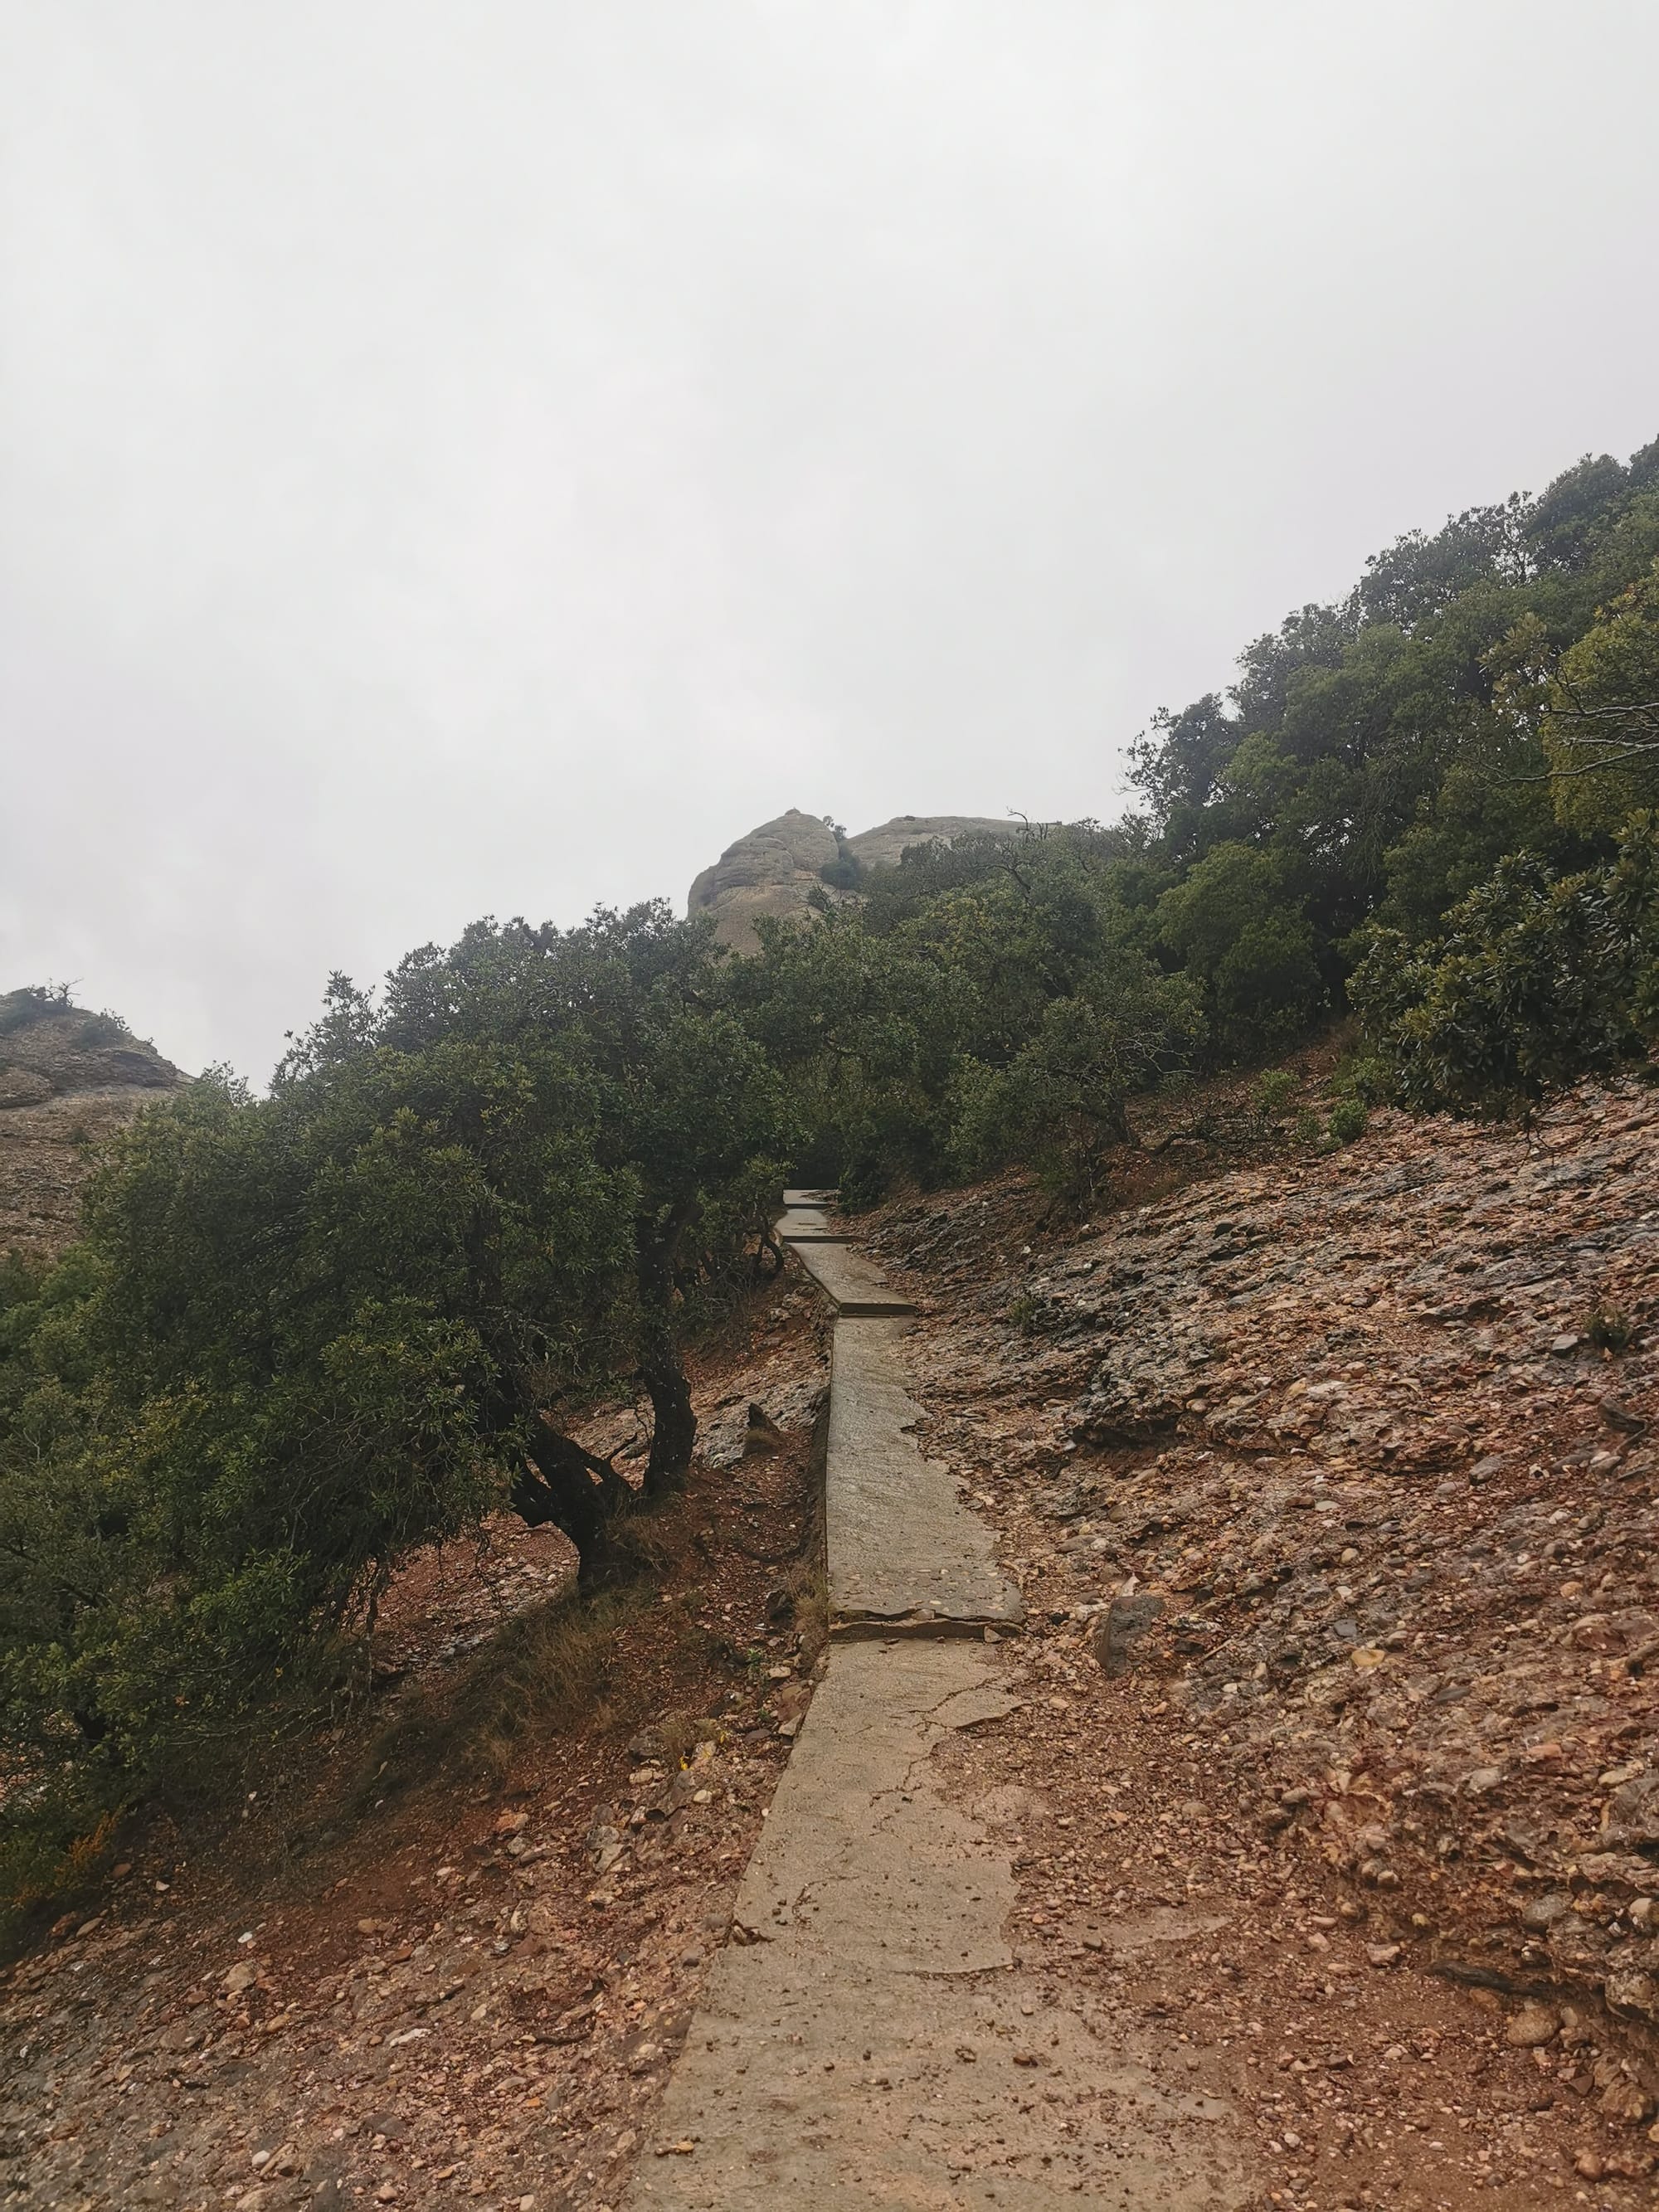 Montserrat: Wandern vom Kloster auf den Sant Jeroni Gipfel